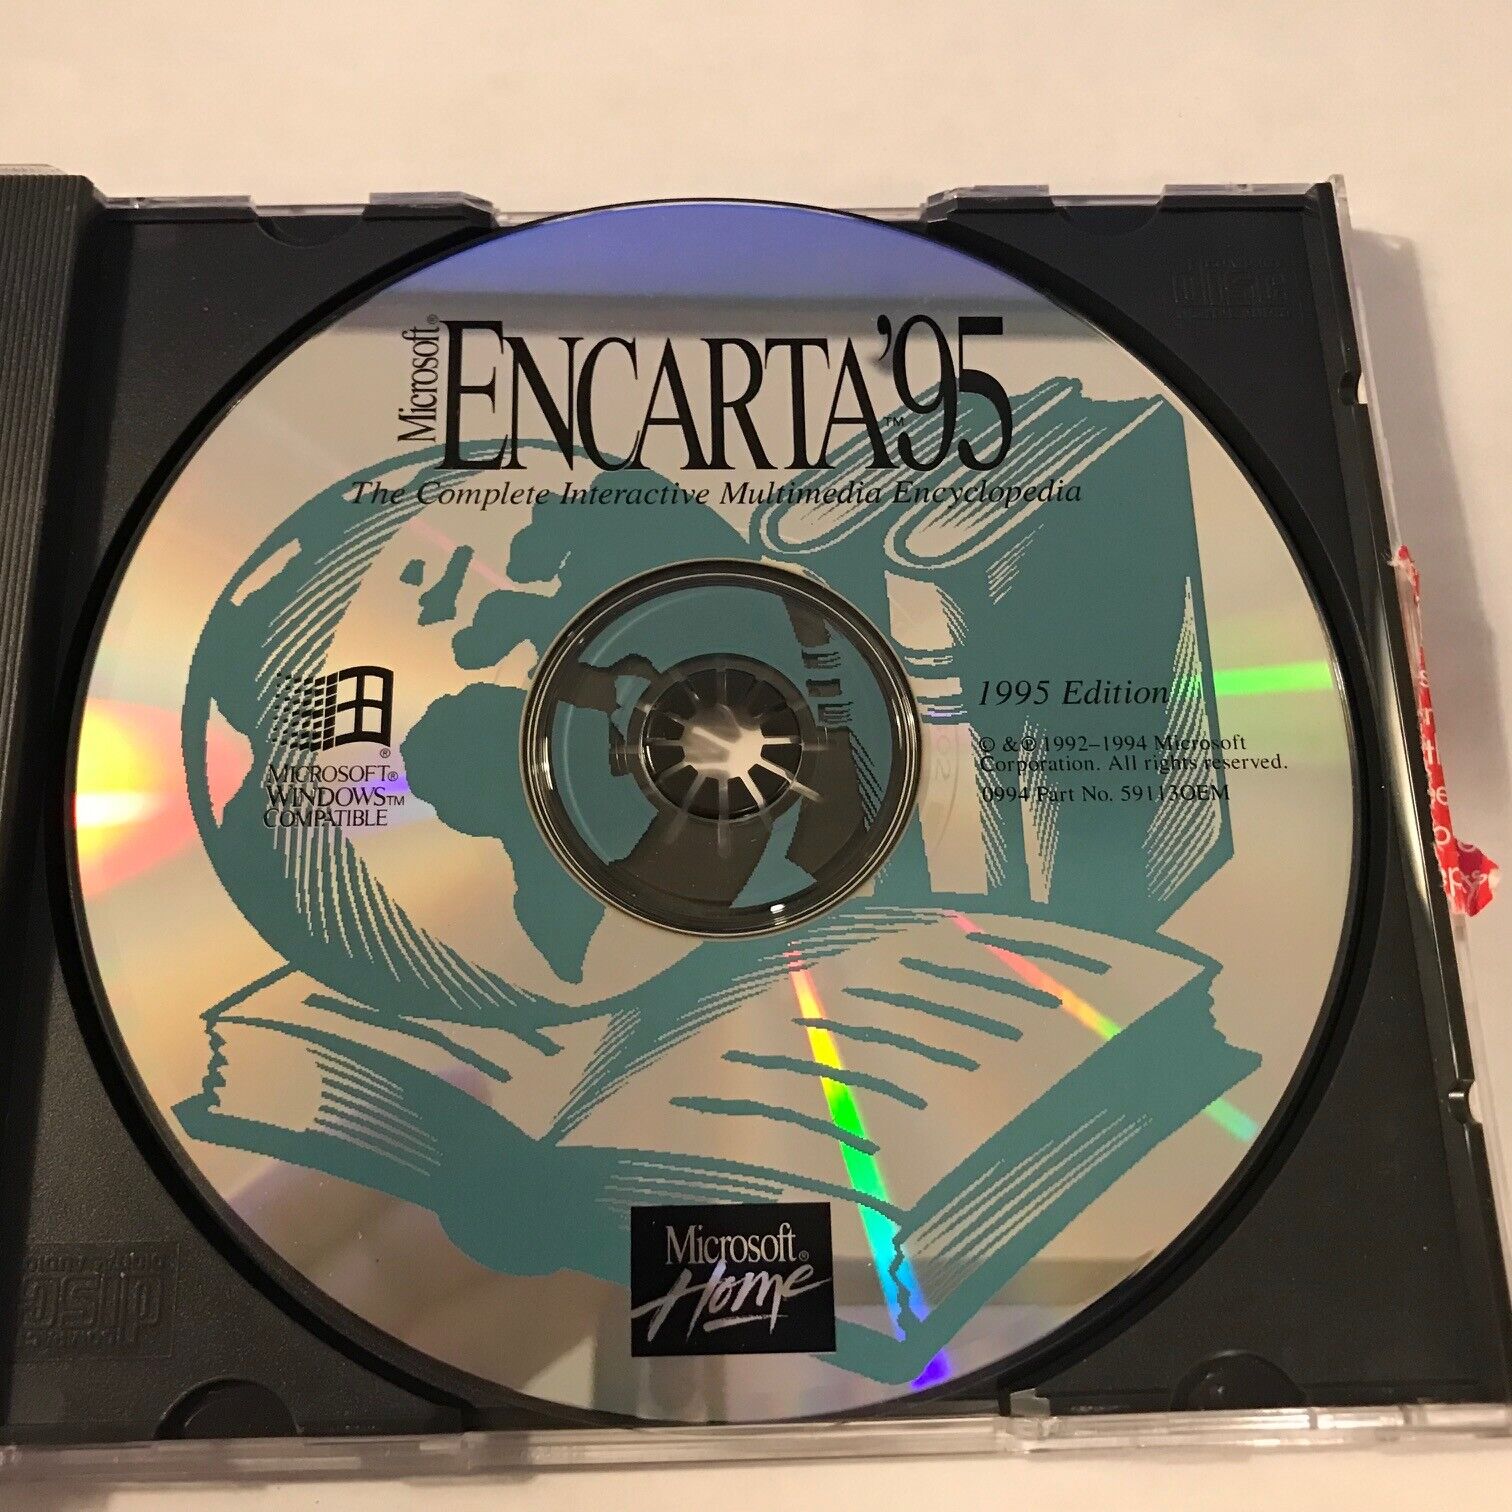 VINTAGE SOFTWARE ENCARTA 95 ENCYCLOPEDIA CD SOFTWARE FOR WIN95 OEM VERSION